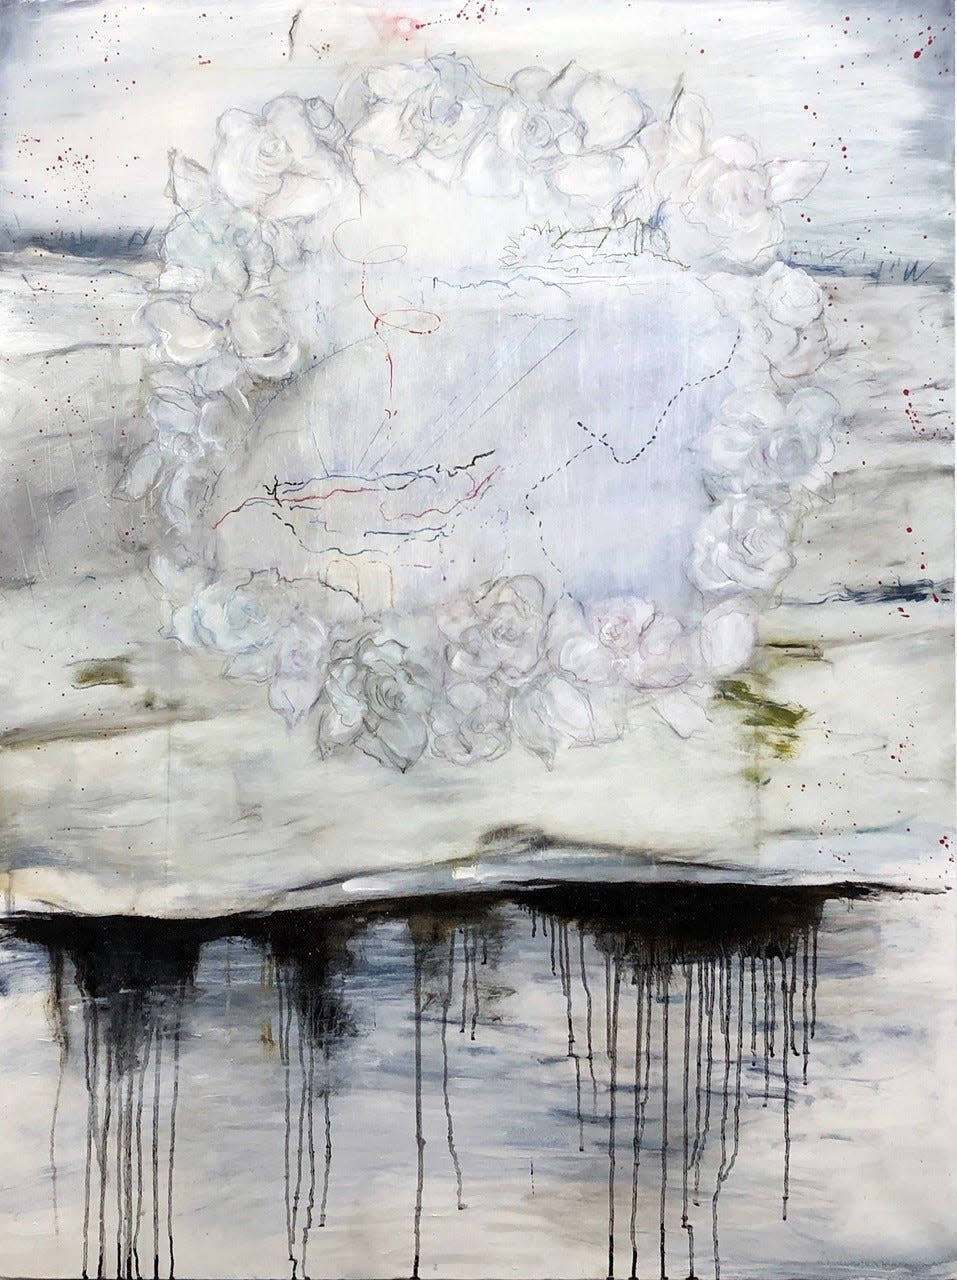 Michele Provost, "À Tous Les Enfants," (detail), mixed media on canvas.